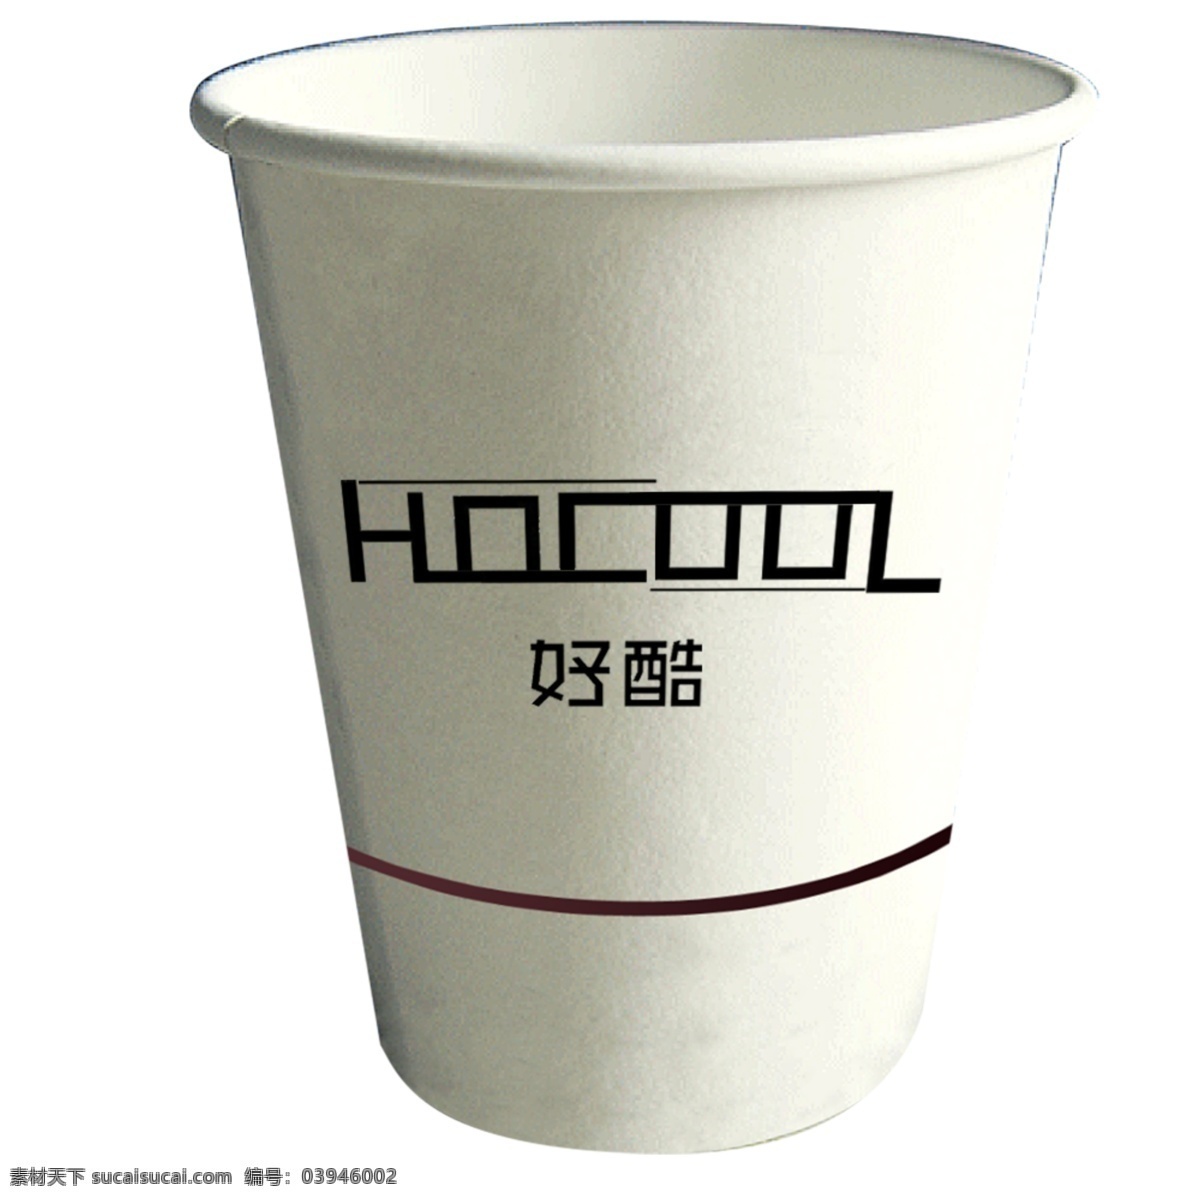 好酷logo 好 酷 cool 纸杯 杯子 logo 标志图标 企业 标志